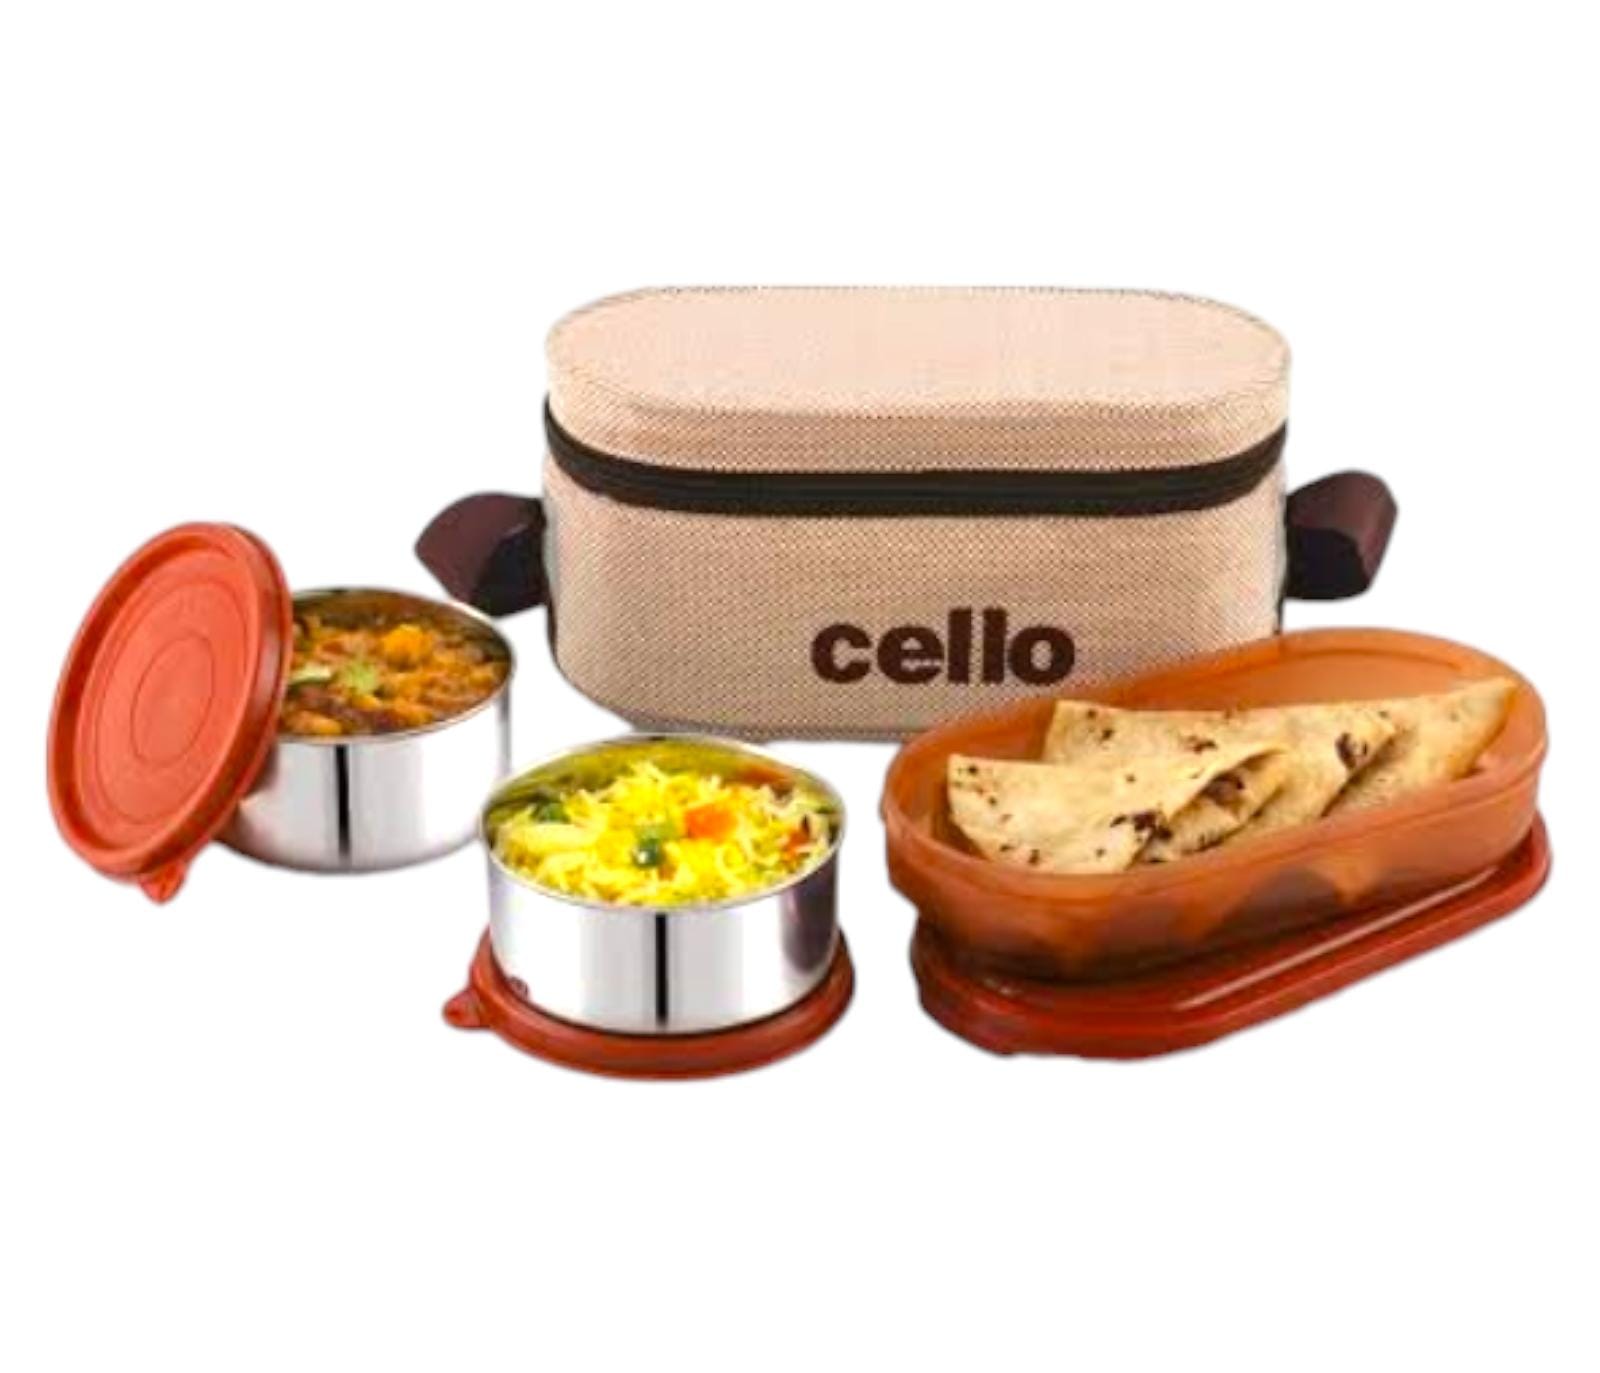 Cello Lunch Box